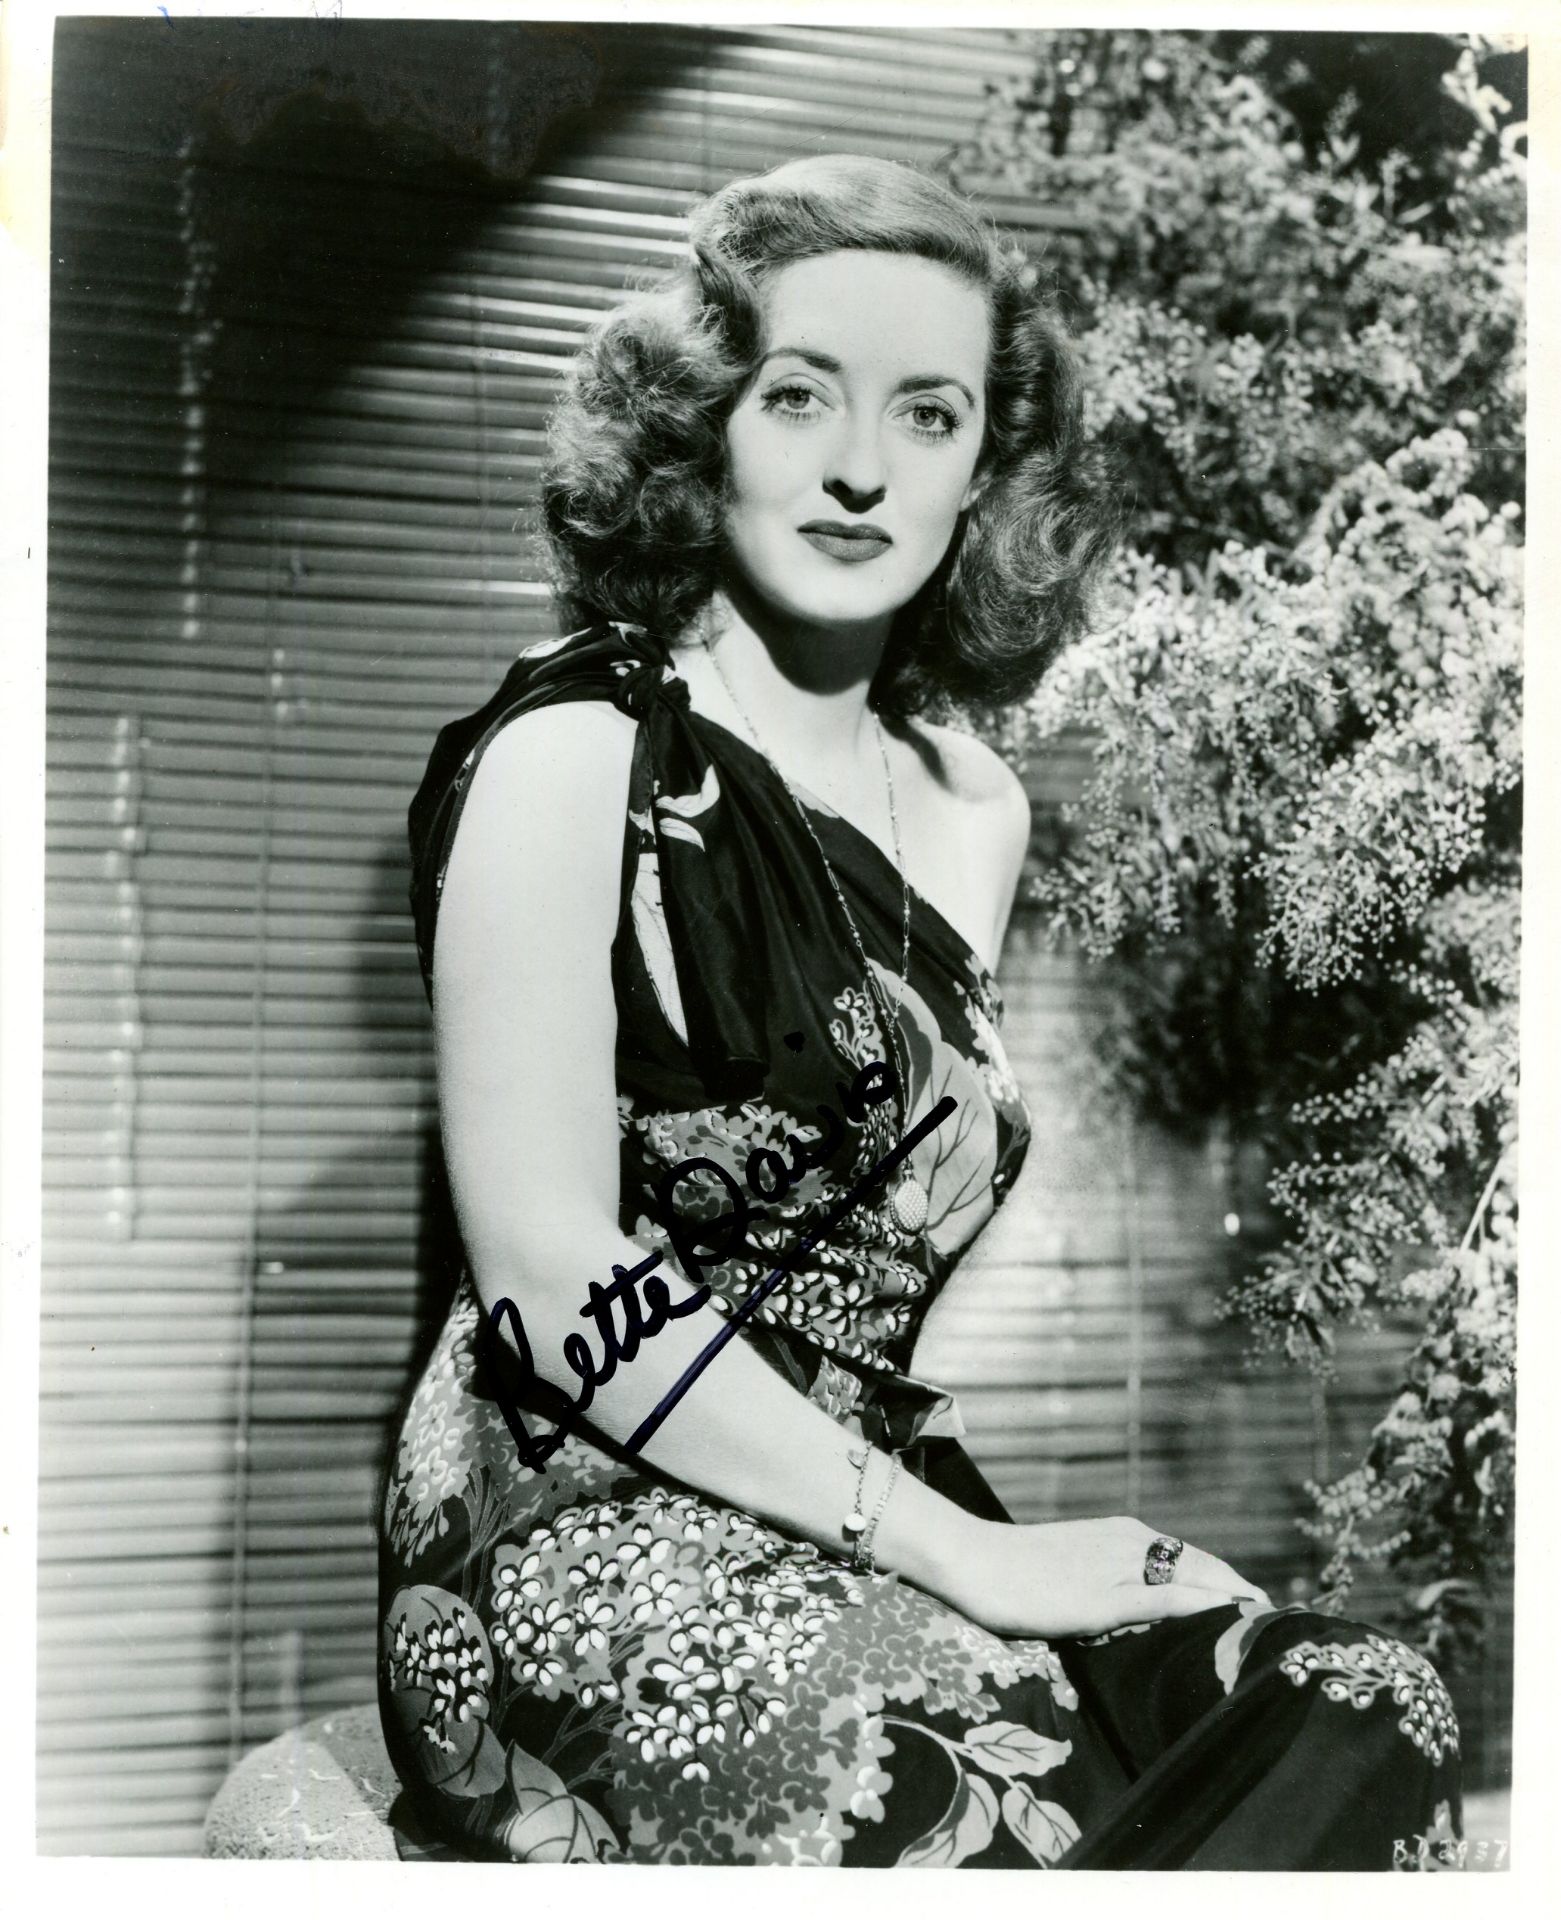 DAVIS BETTE: (1908-1989) American actress, Academy Award winner. Signed 8 x 10 photograph by